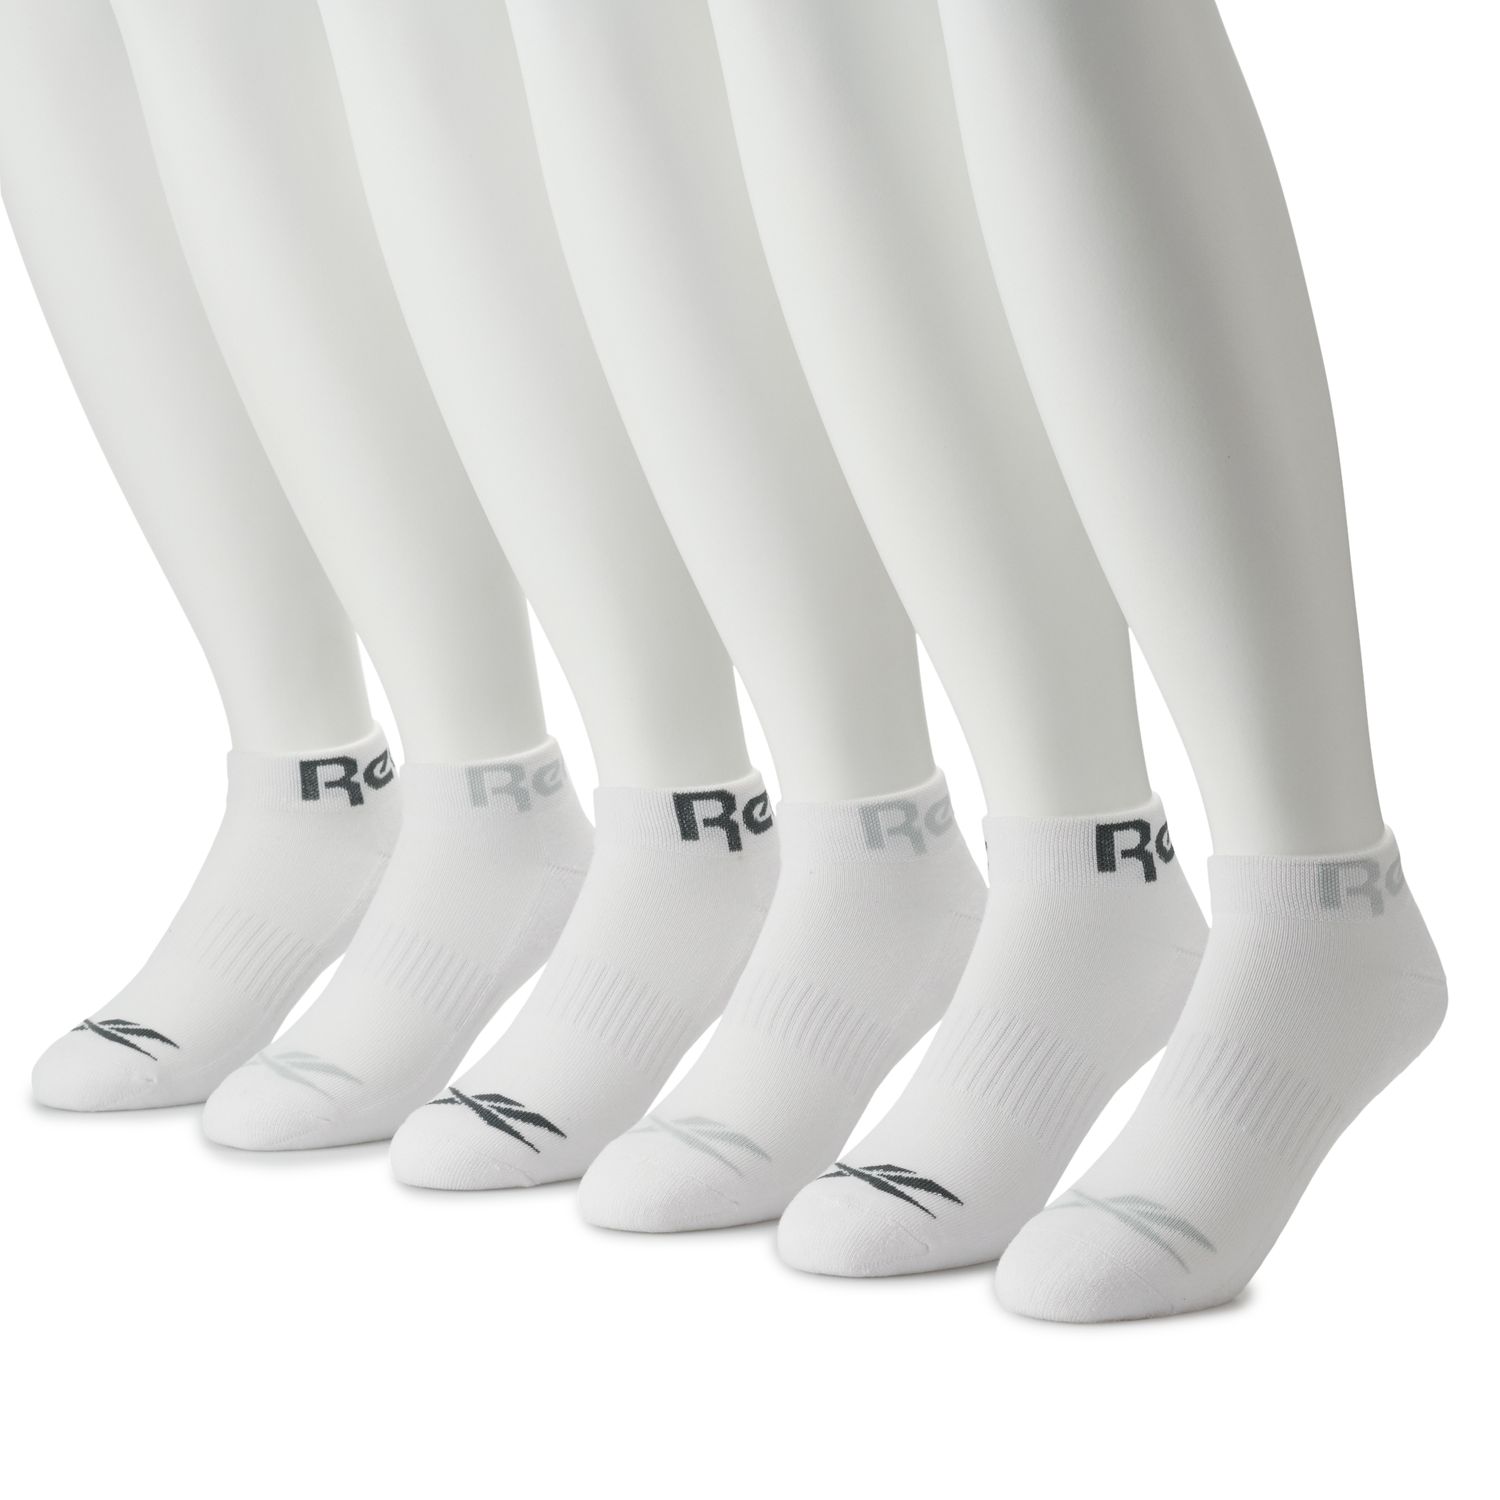 reebok socks pack of 6